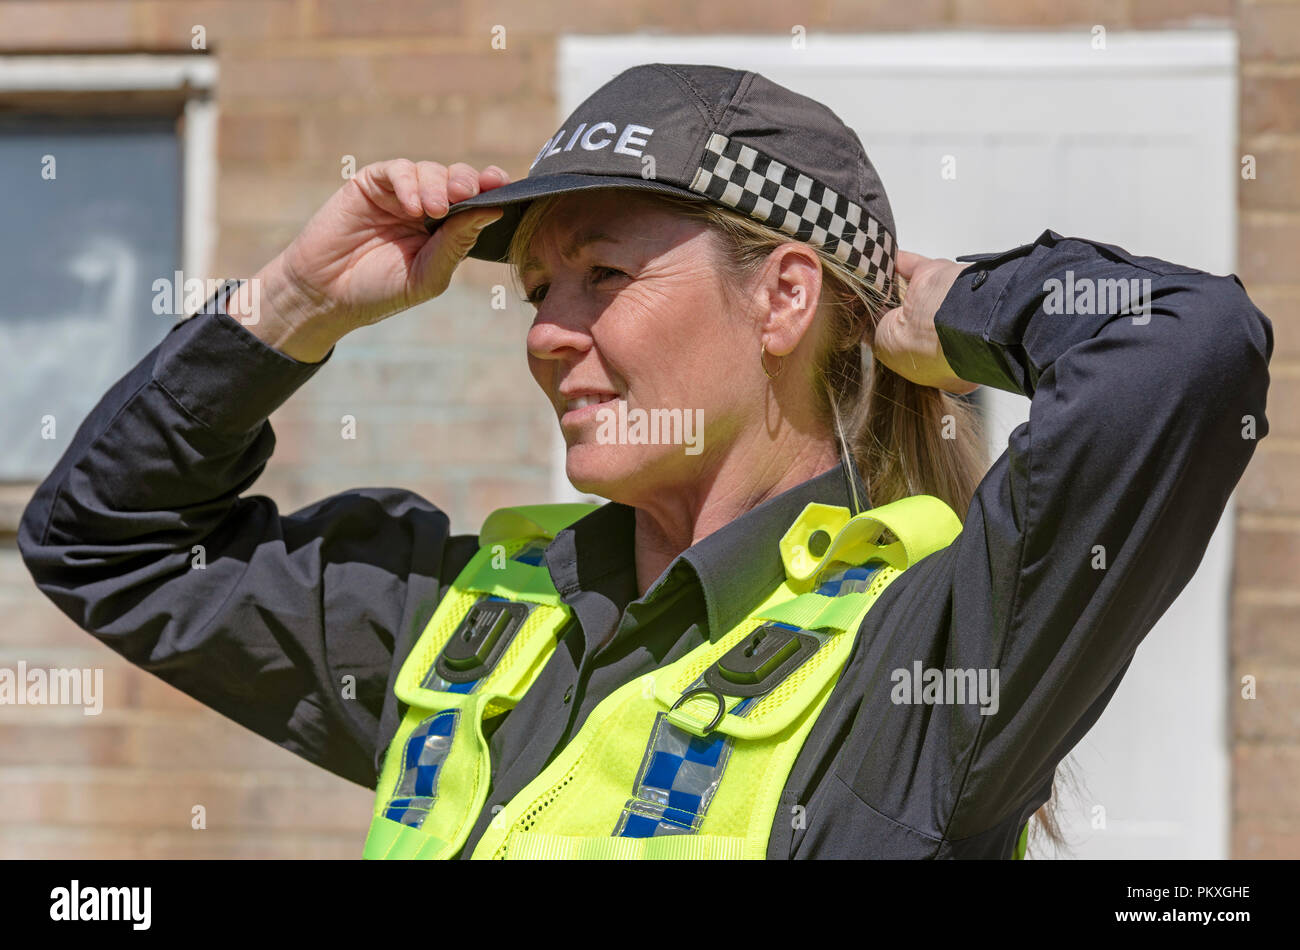 Ritratto di una donna poliziotto che indossa una uniforme cap. Foto Stock